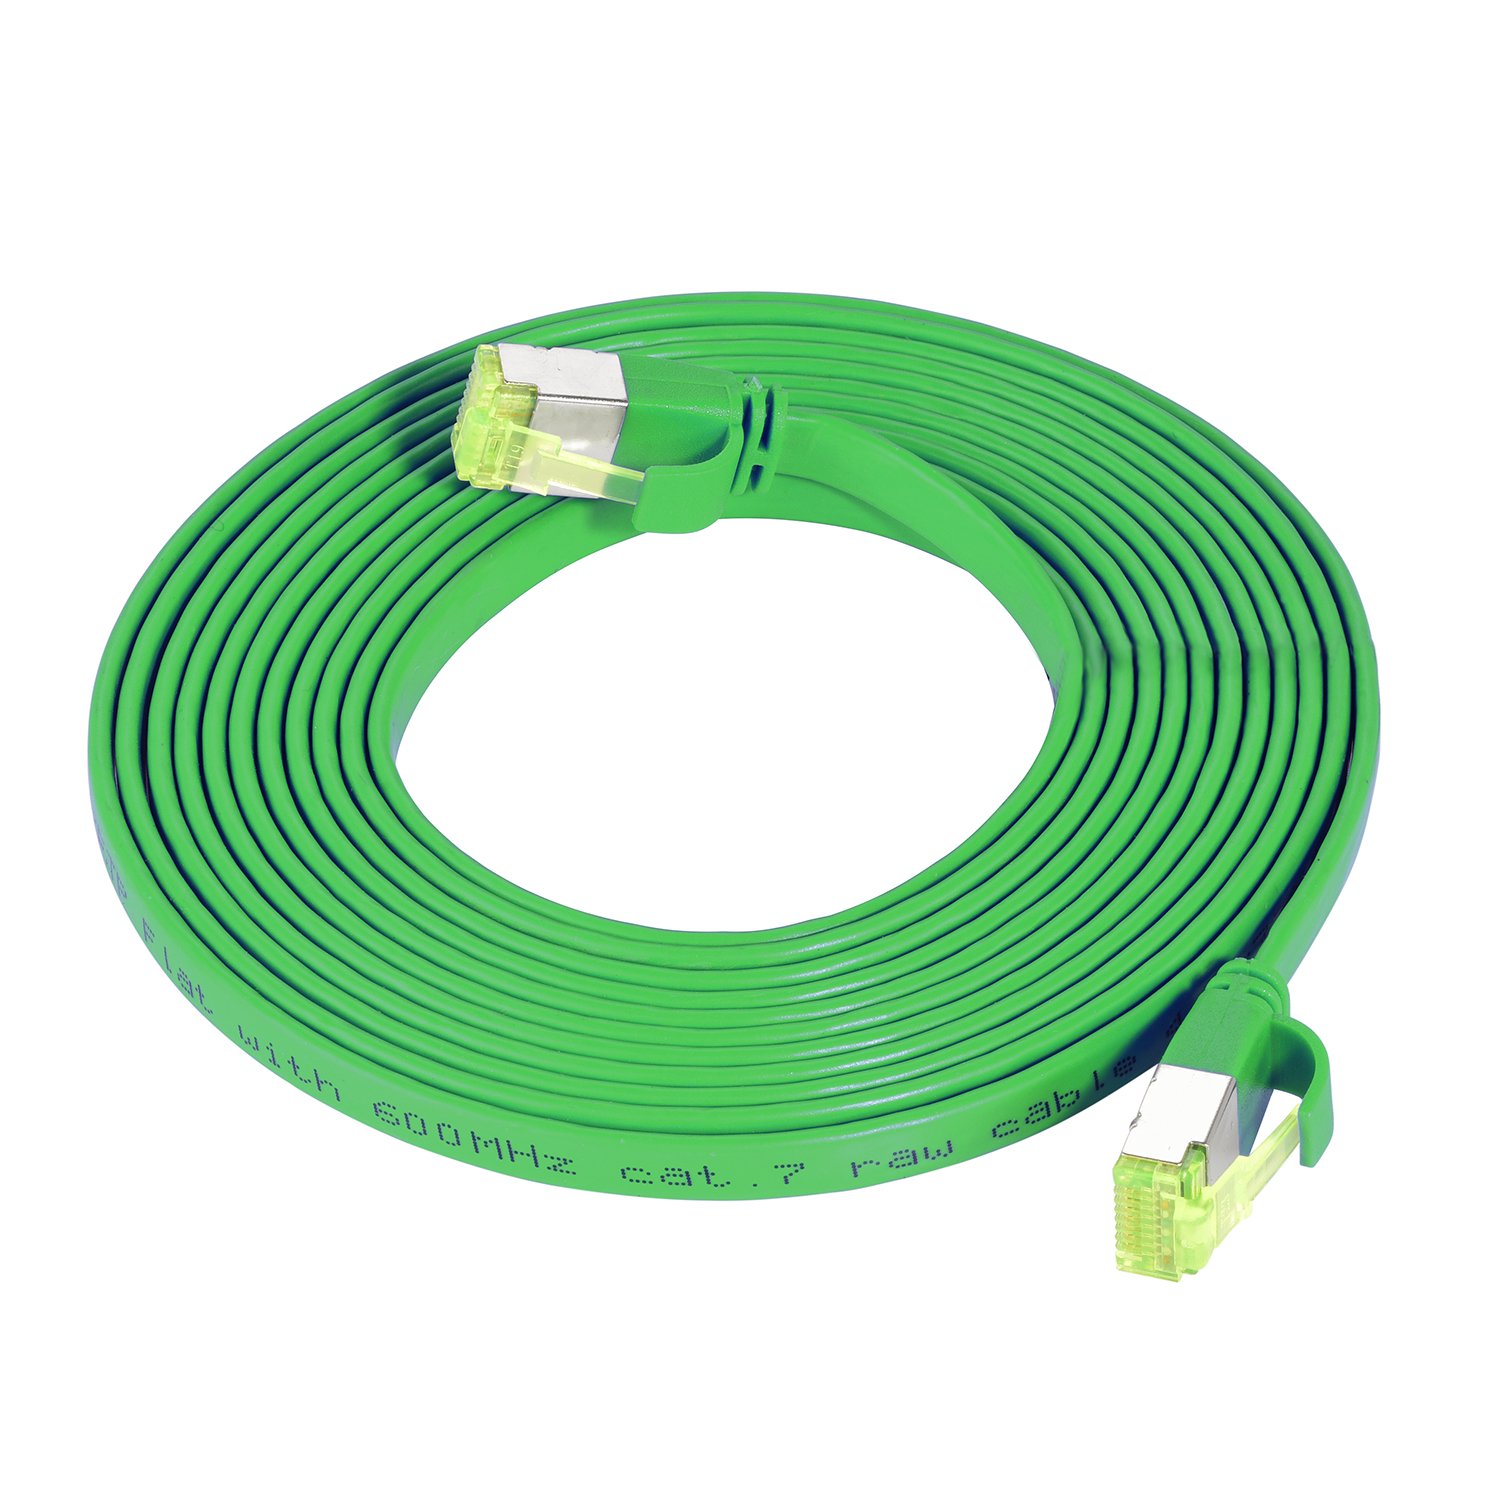 GBit, U/FTP m 10 Flachkabel / TPFNET 0,50m Patchkabel Netzwerkkabel, grün, 0,5